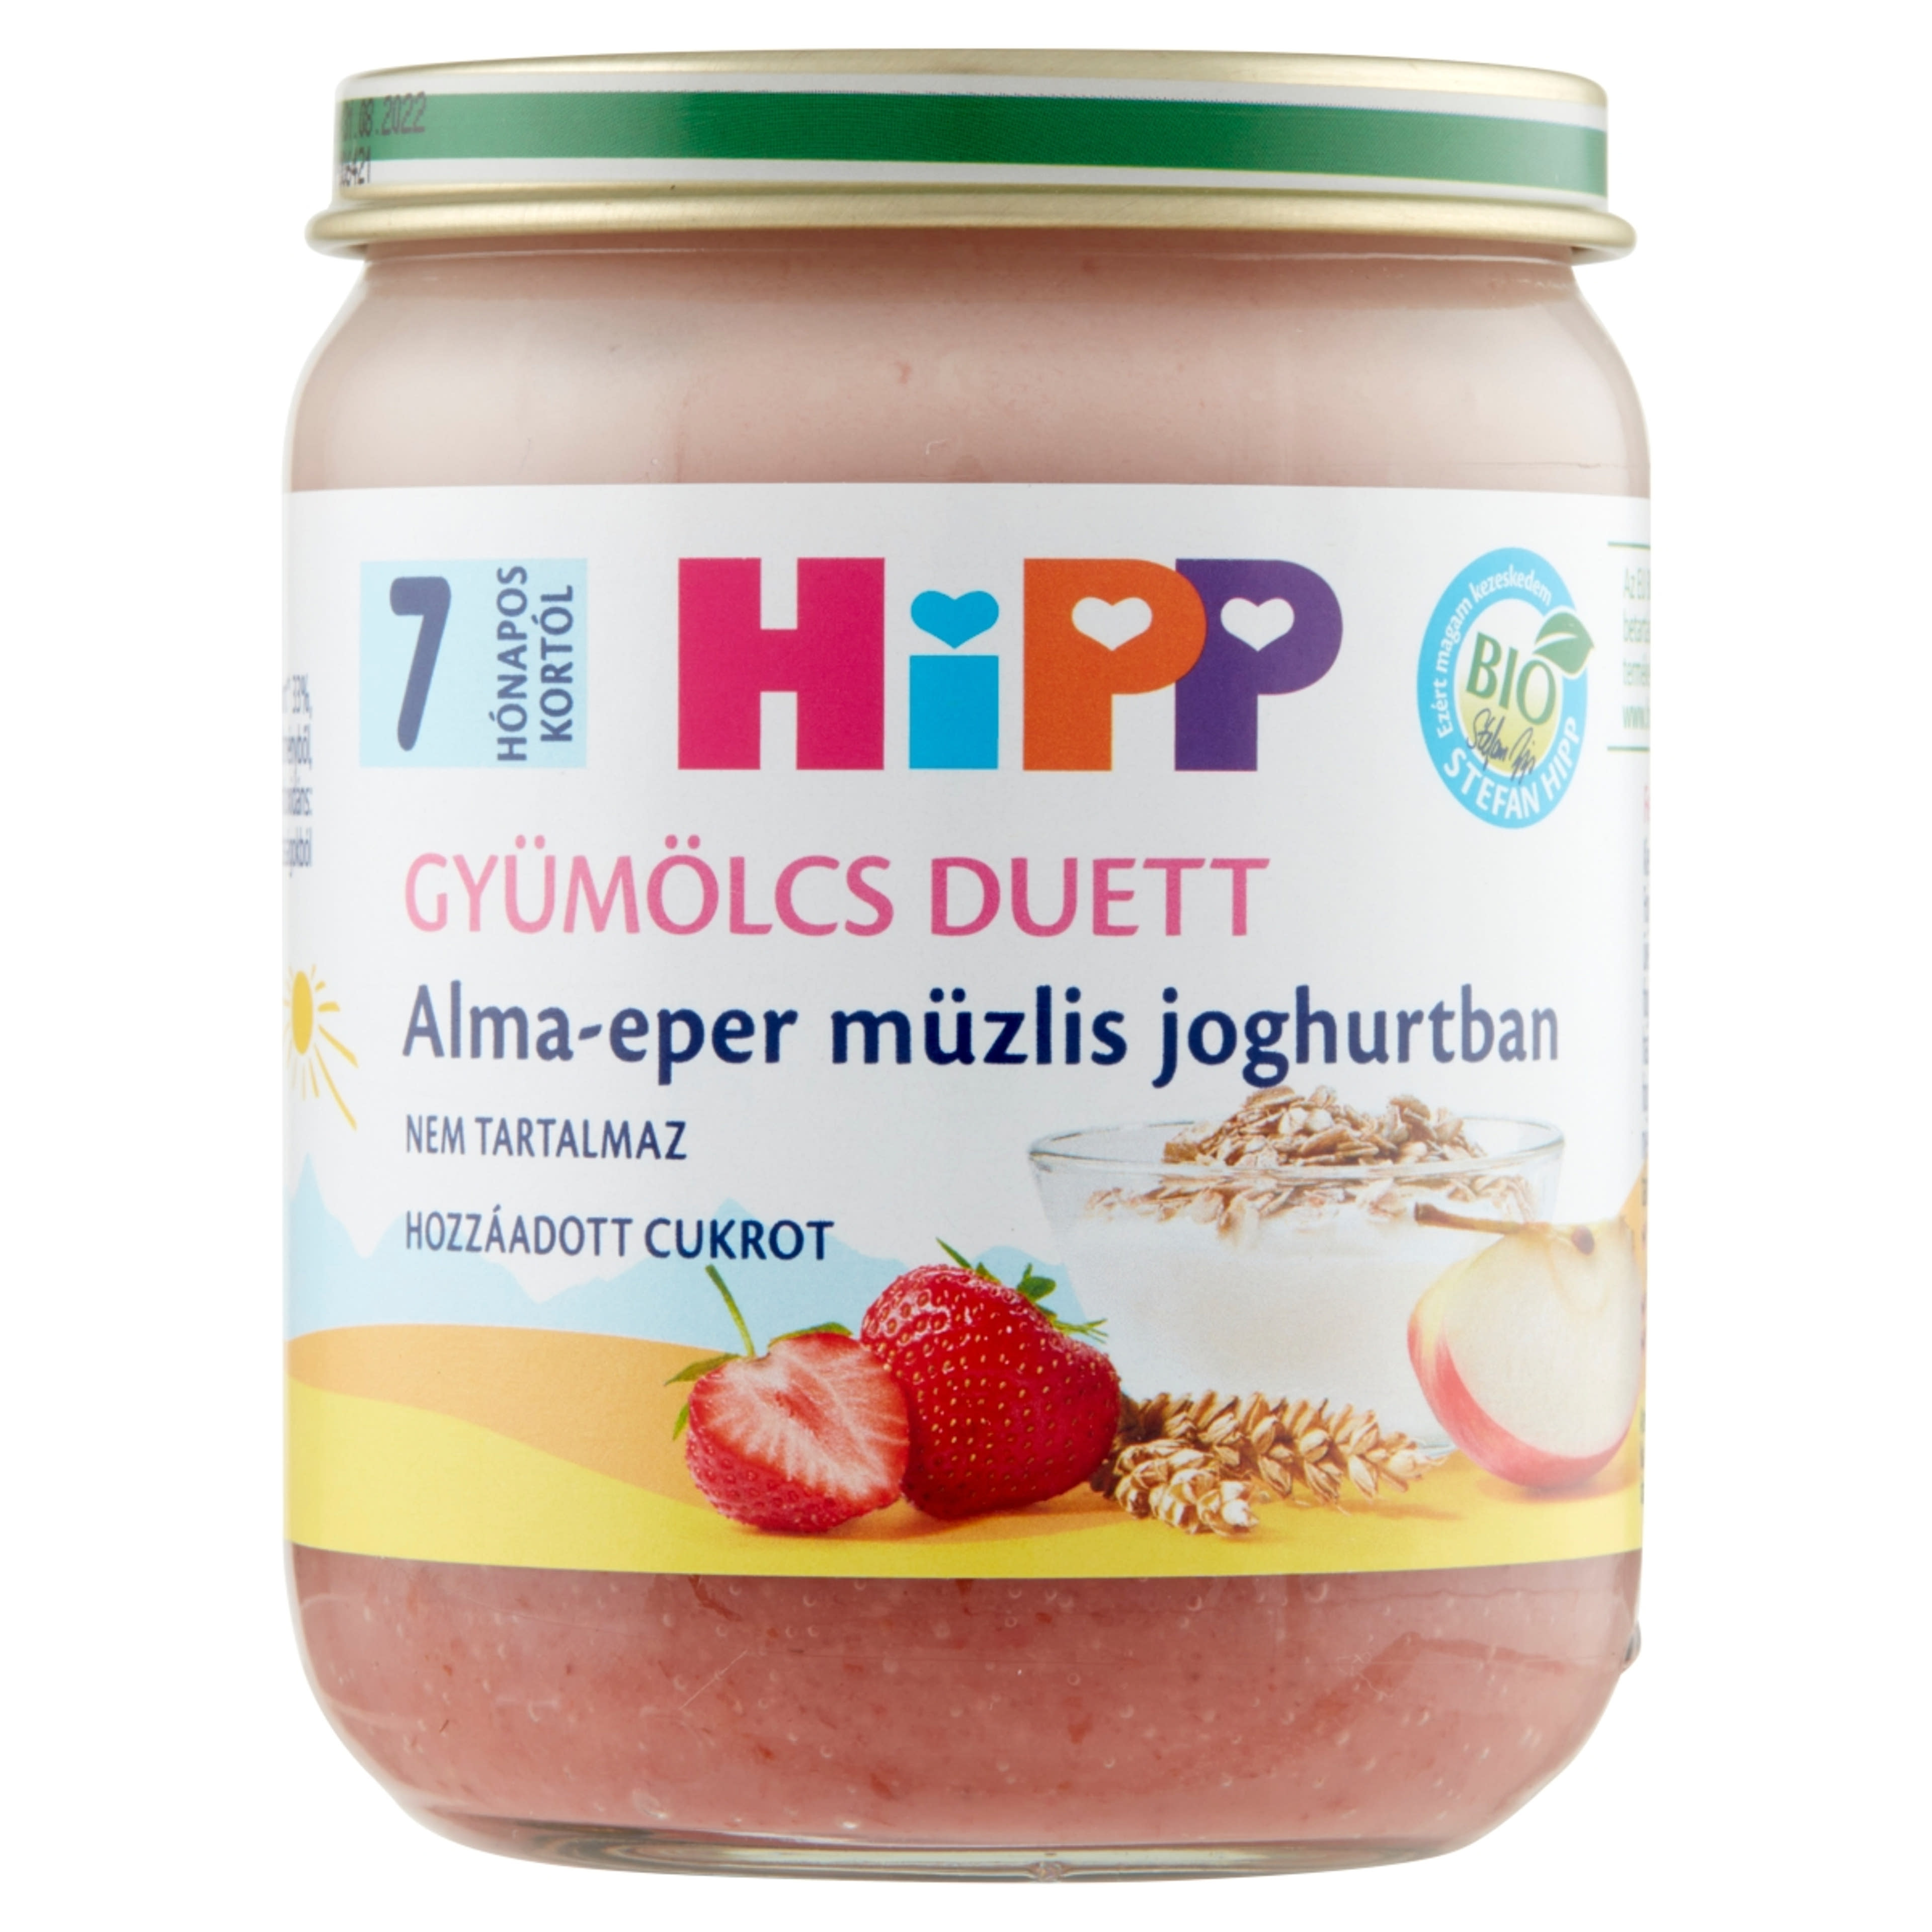 Hipp bio 7 hónapos kortól alma-eper-müzlis joghurtban - 160 g